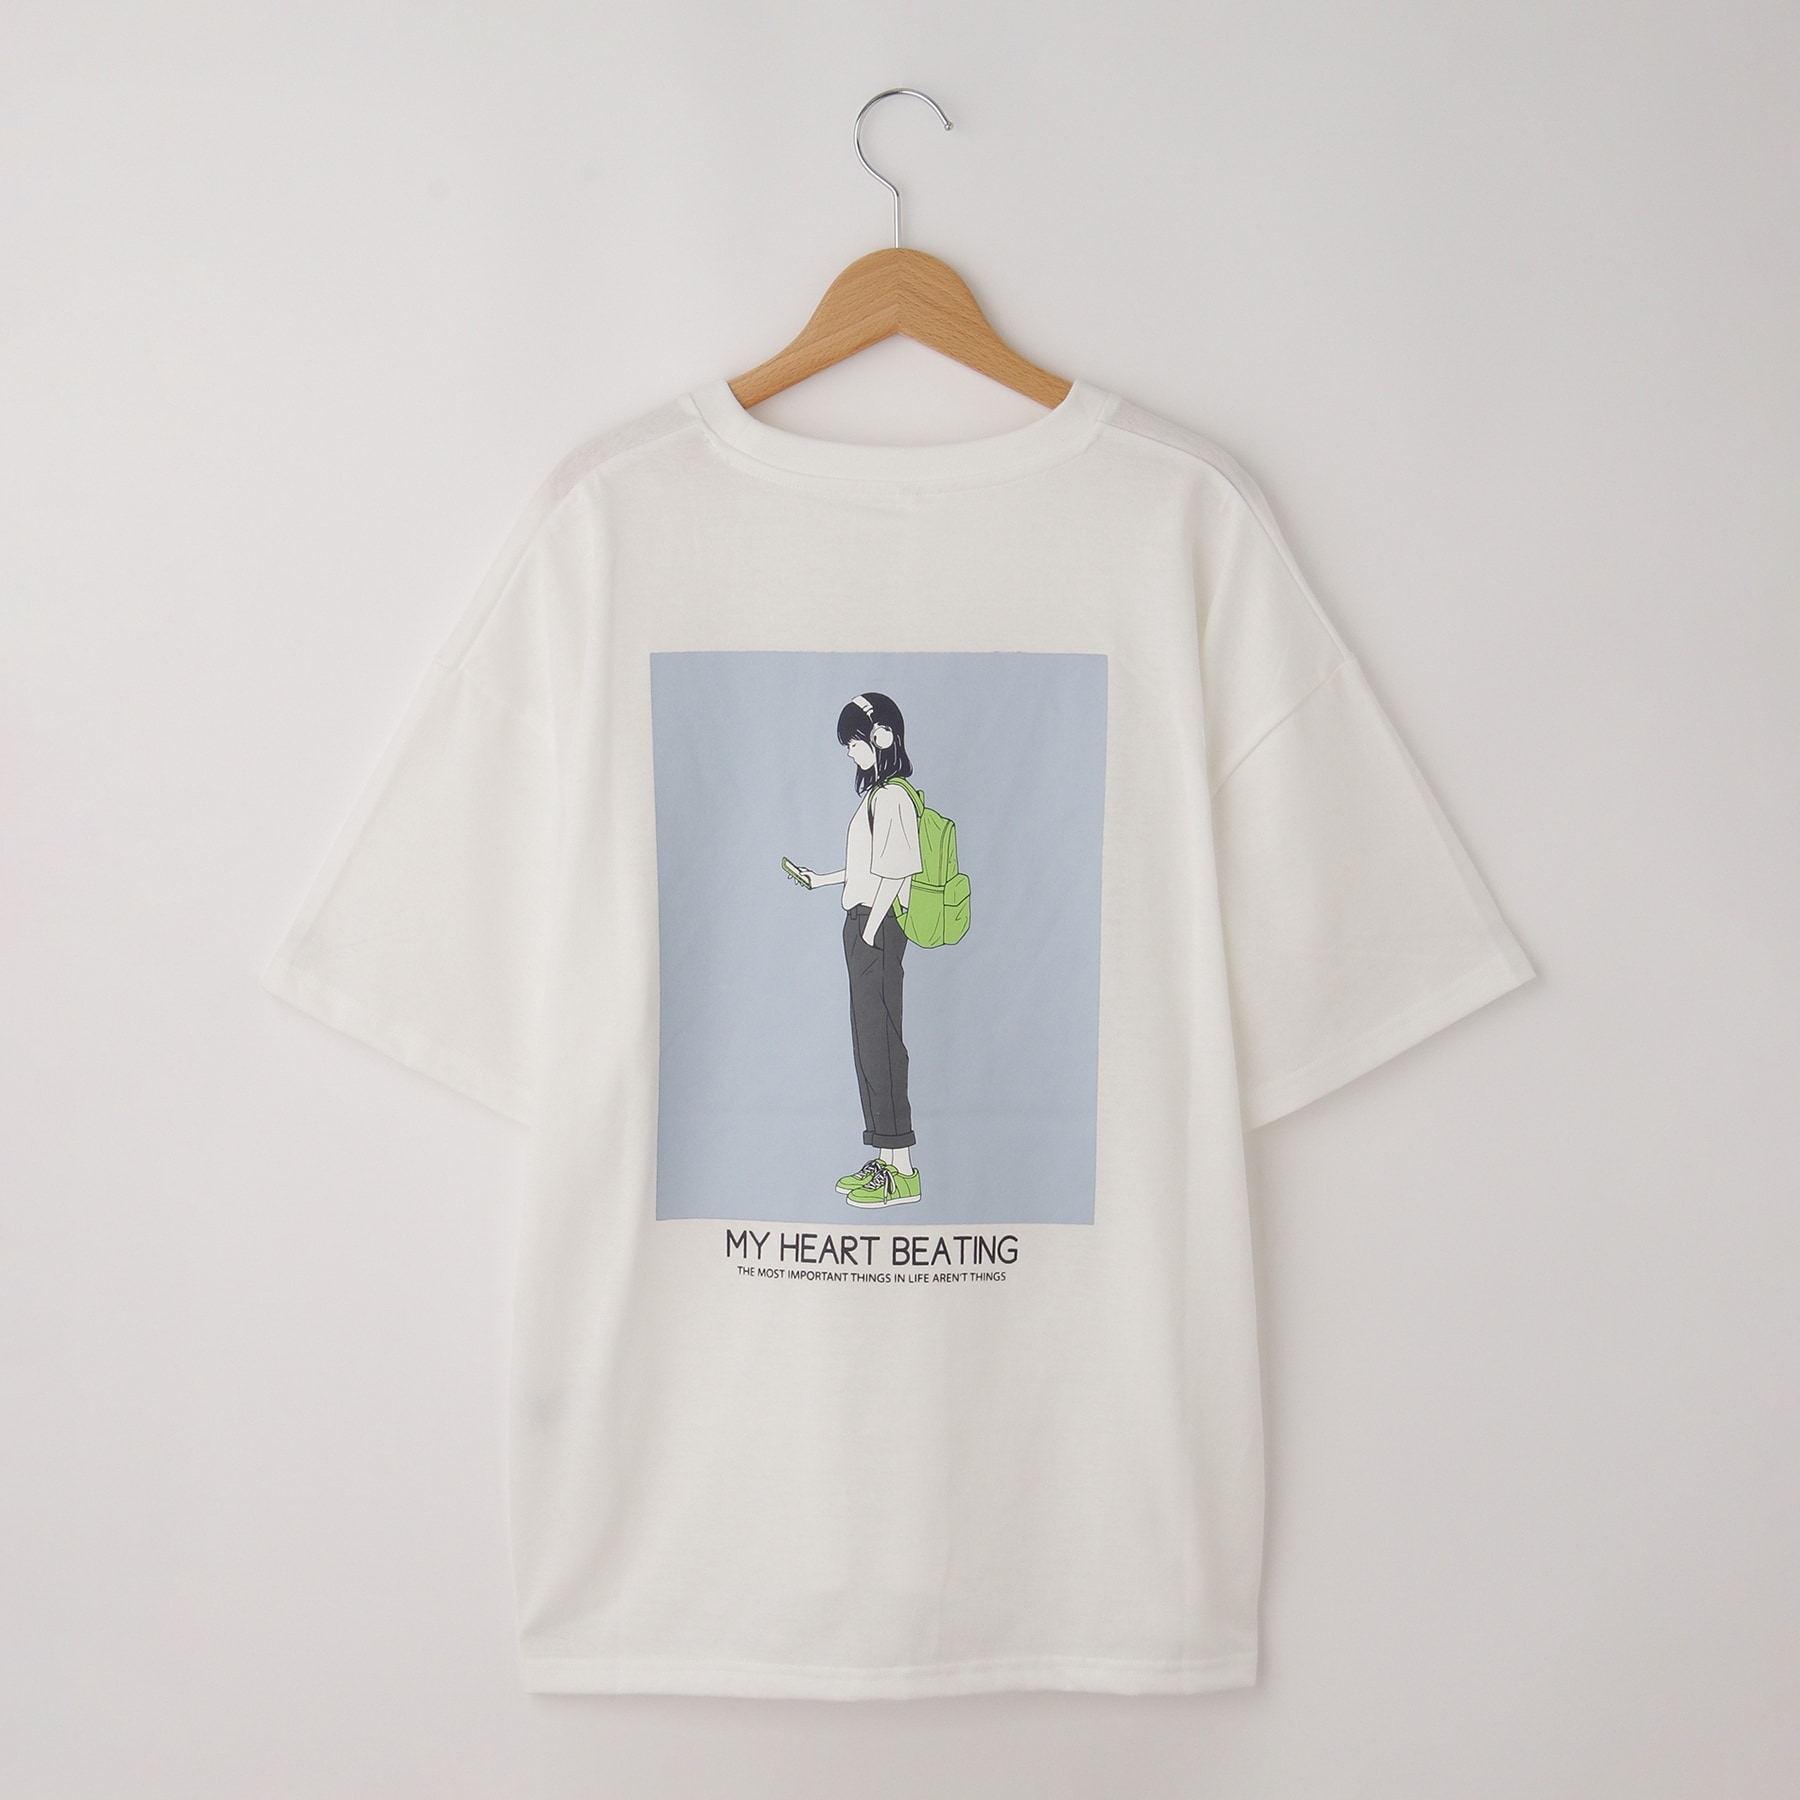 オフプライスストア(メンズ)(OFF PRICE STORE(Mens))のHALHAM　oversize girls print  T-shirt/オーバーサイズ ガールズ プリント Tシャツ4